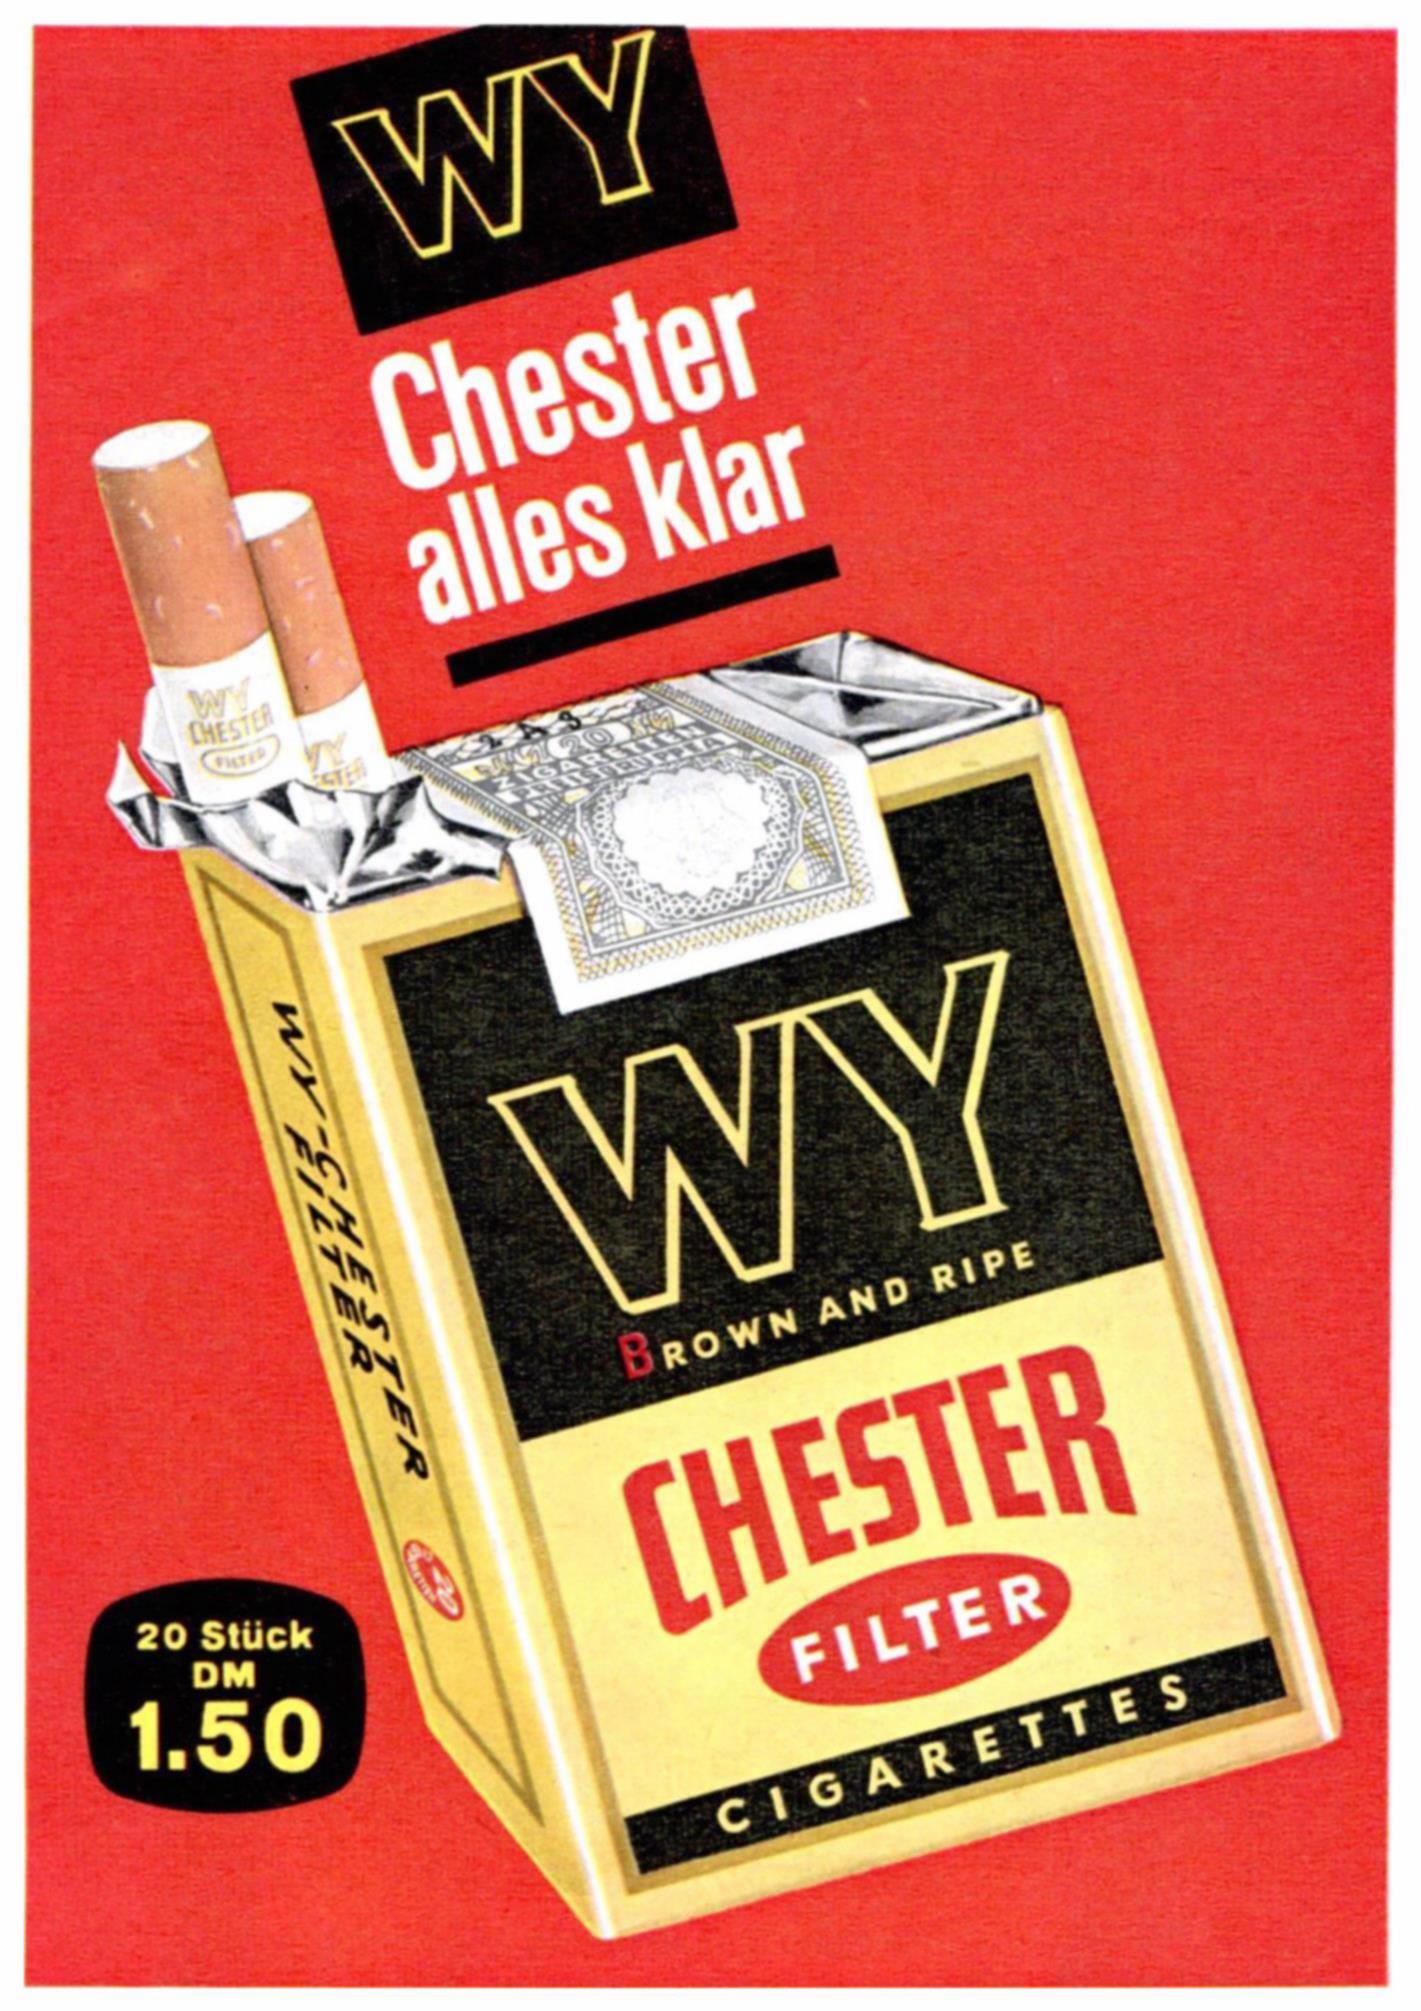 Chester 1964 0.jpg